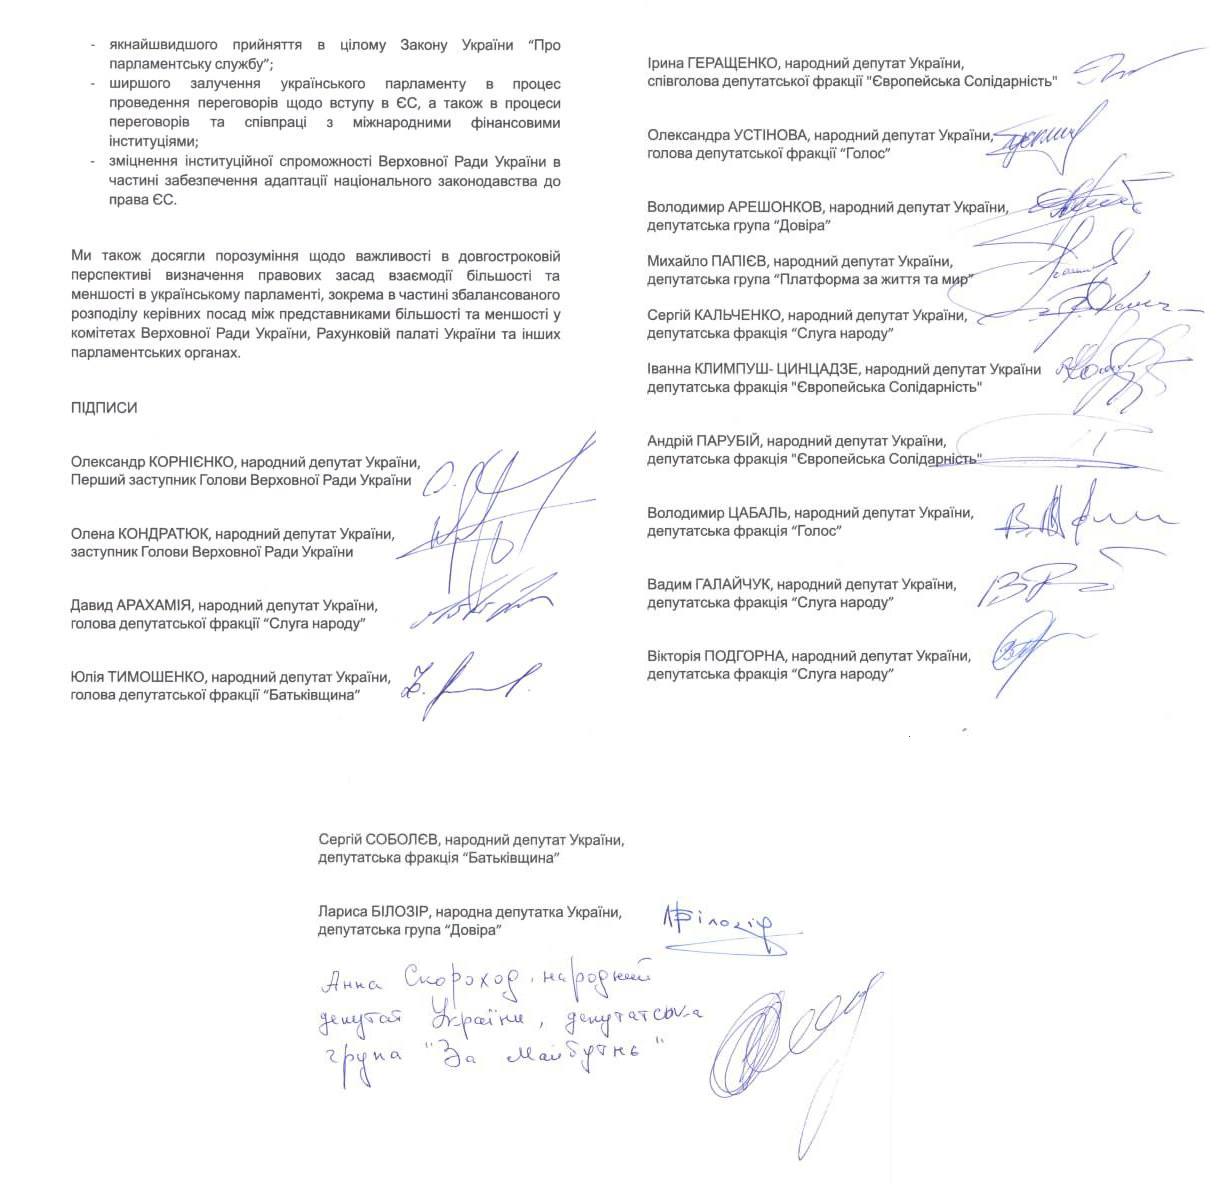 Представители ВРУ подписали заявление, согласно которому до конца военного положения в Украине выборы не состоятся